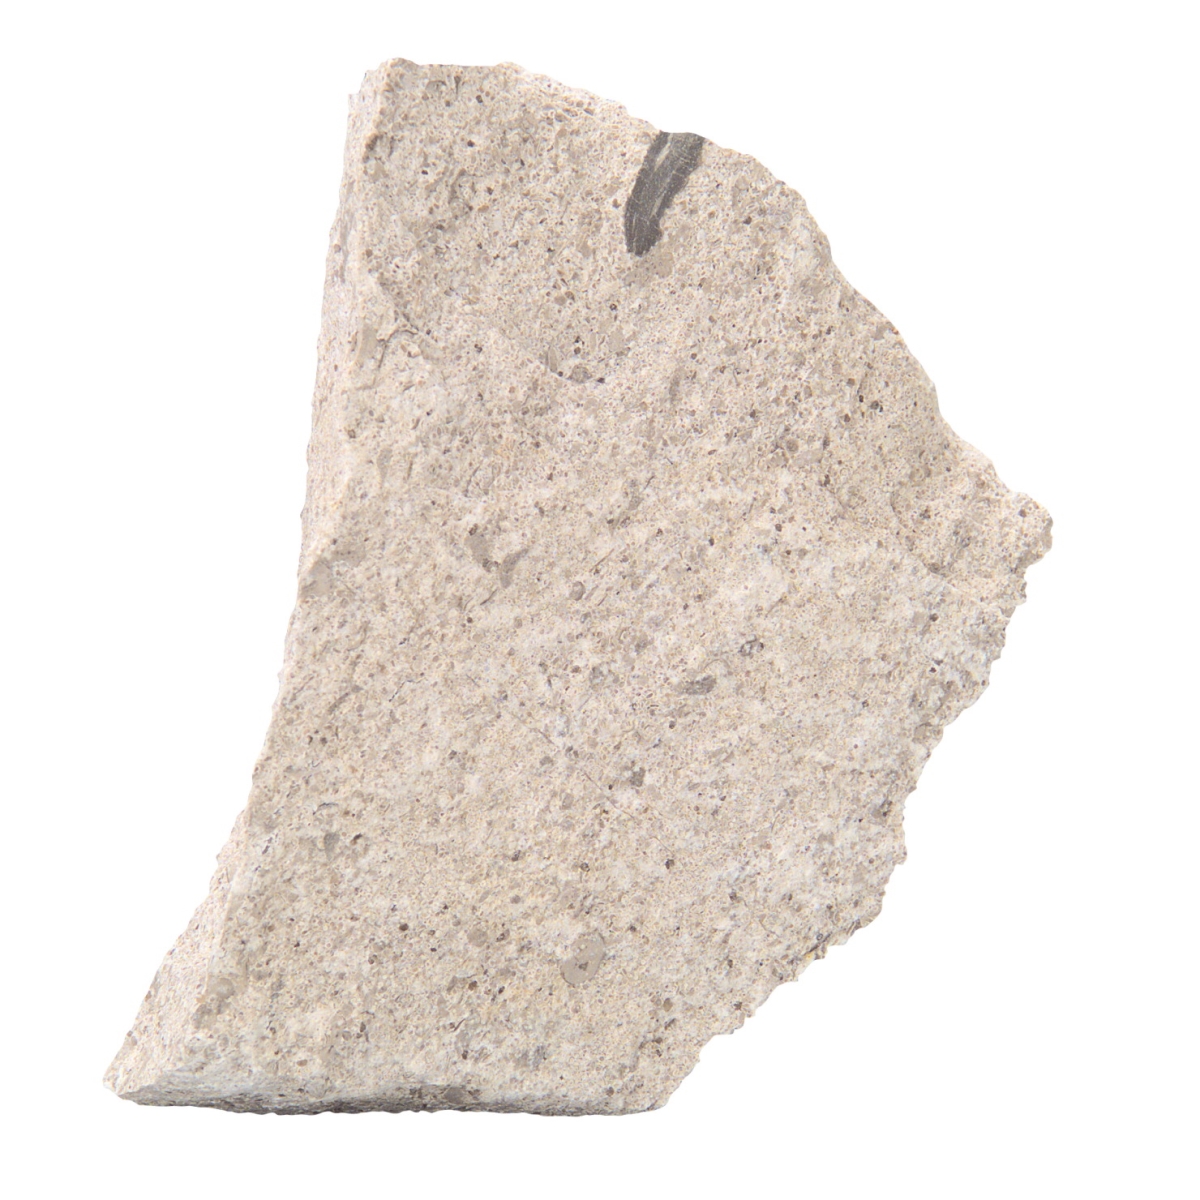 586615 Student Granular Oolitic Limestone - Pack Of 10